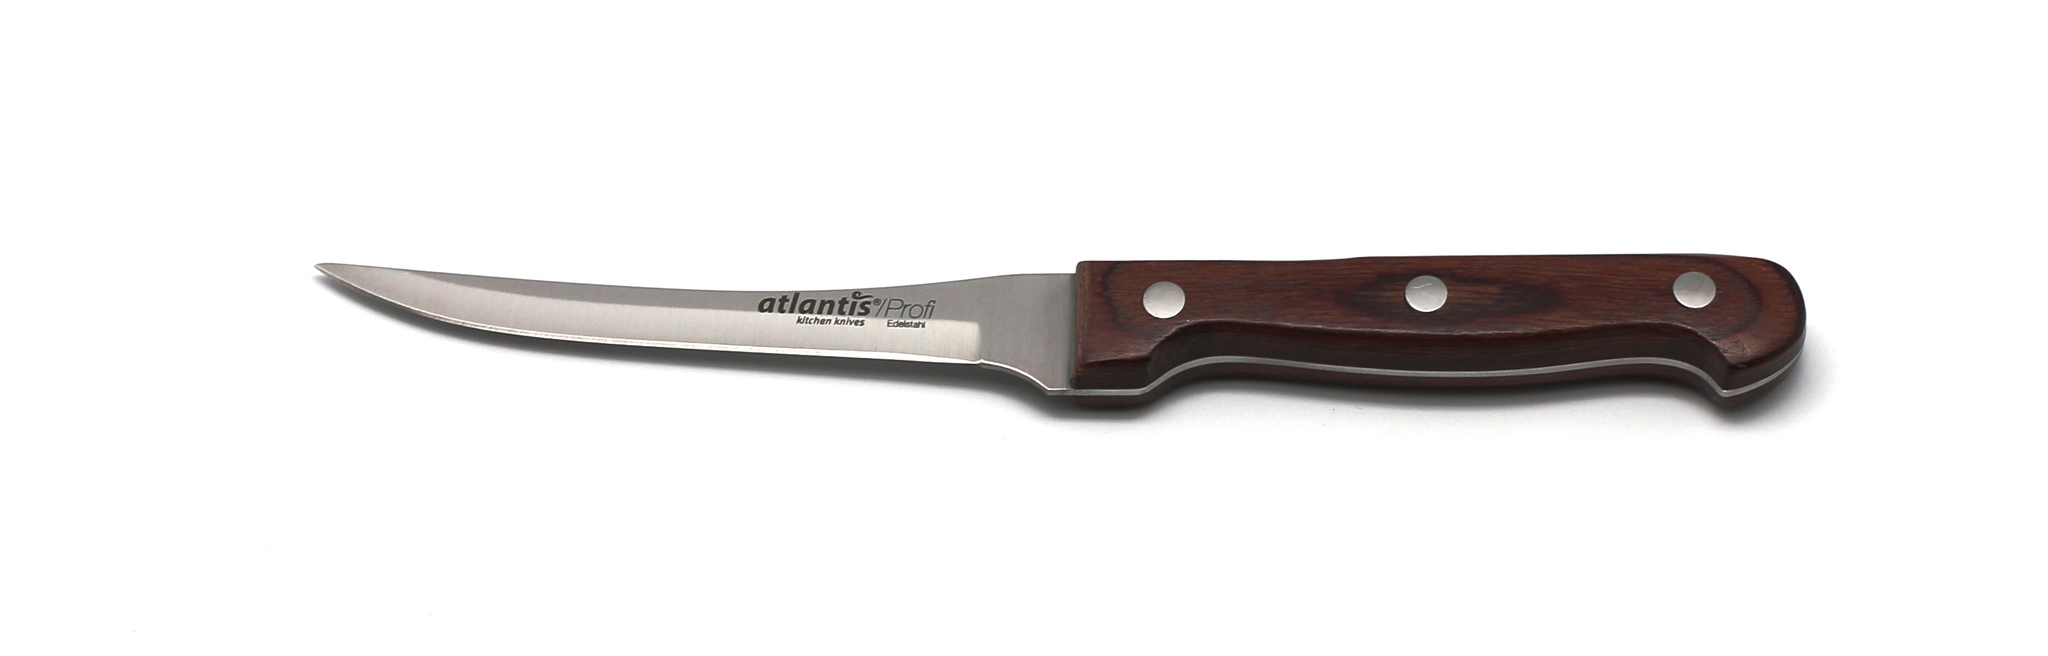 Нож для овощей 10 см, артикул 24418-SK, производитель - Atlantis